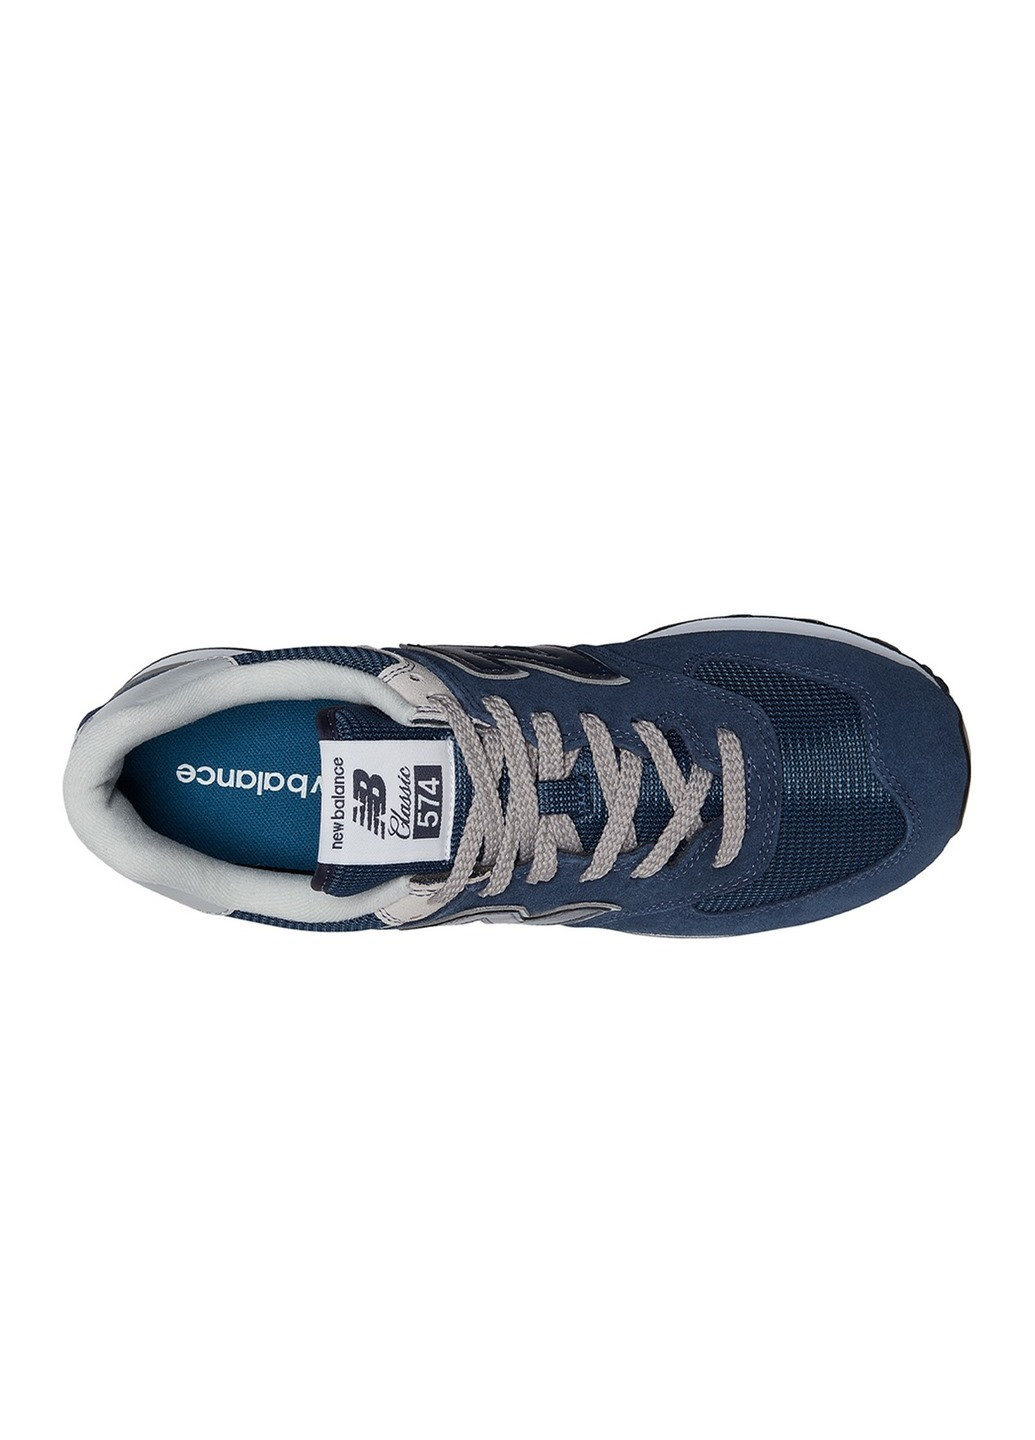 Синие всесезонные кроссовки мужские ml574evn New Balance 574 Classic GL